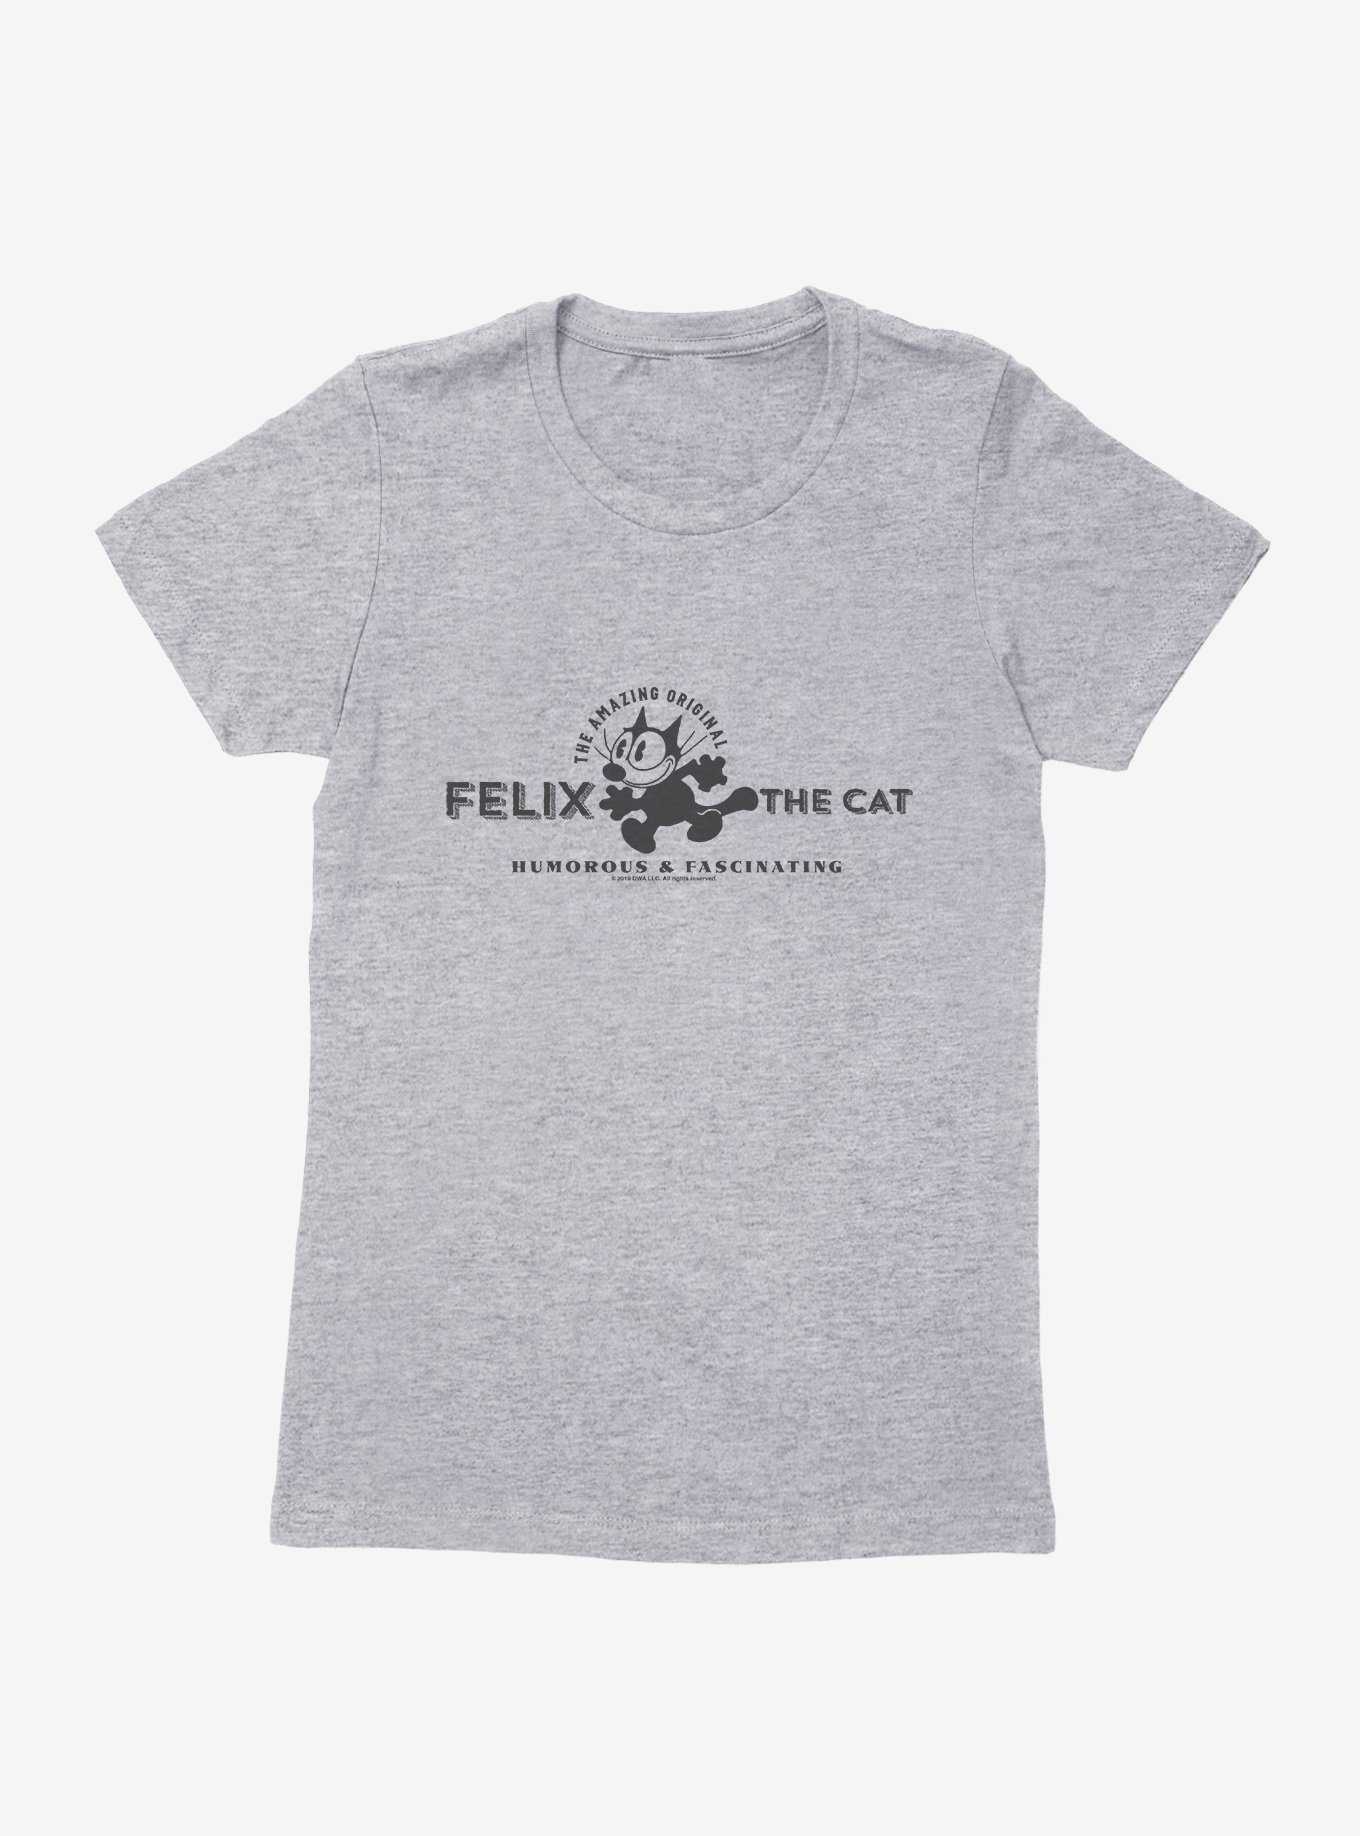 Felix The Cat Humorous & Fascinating Womens T-Shirt, , hi-res